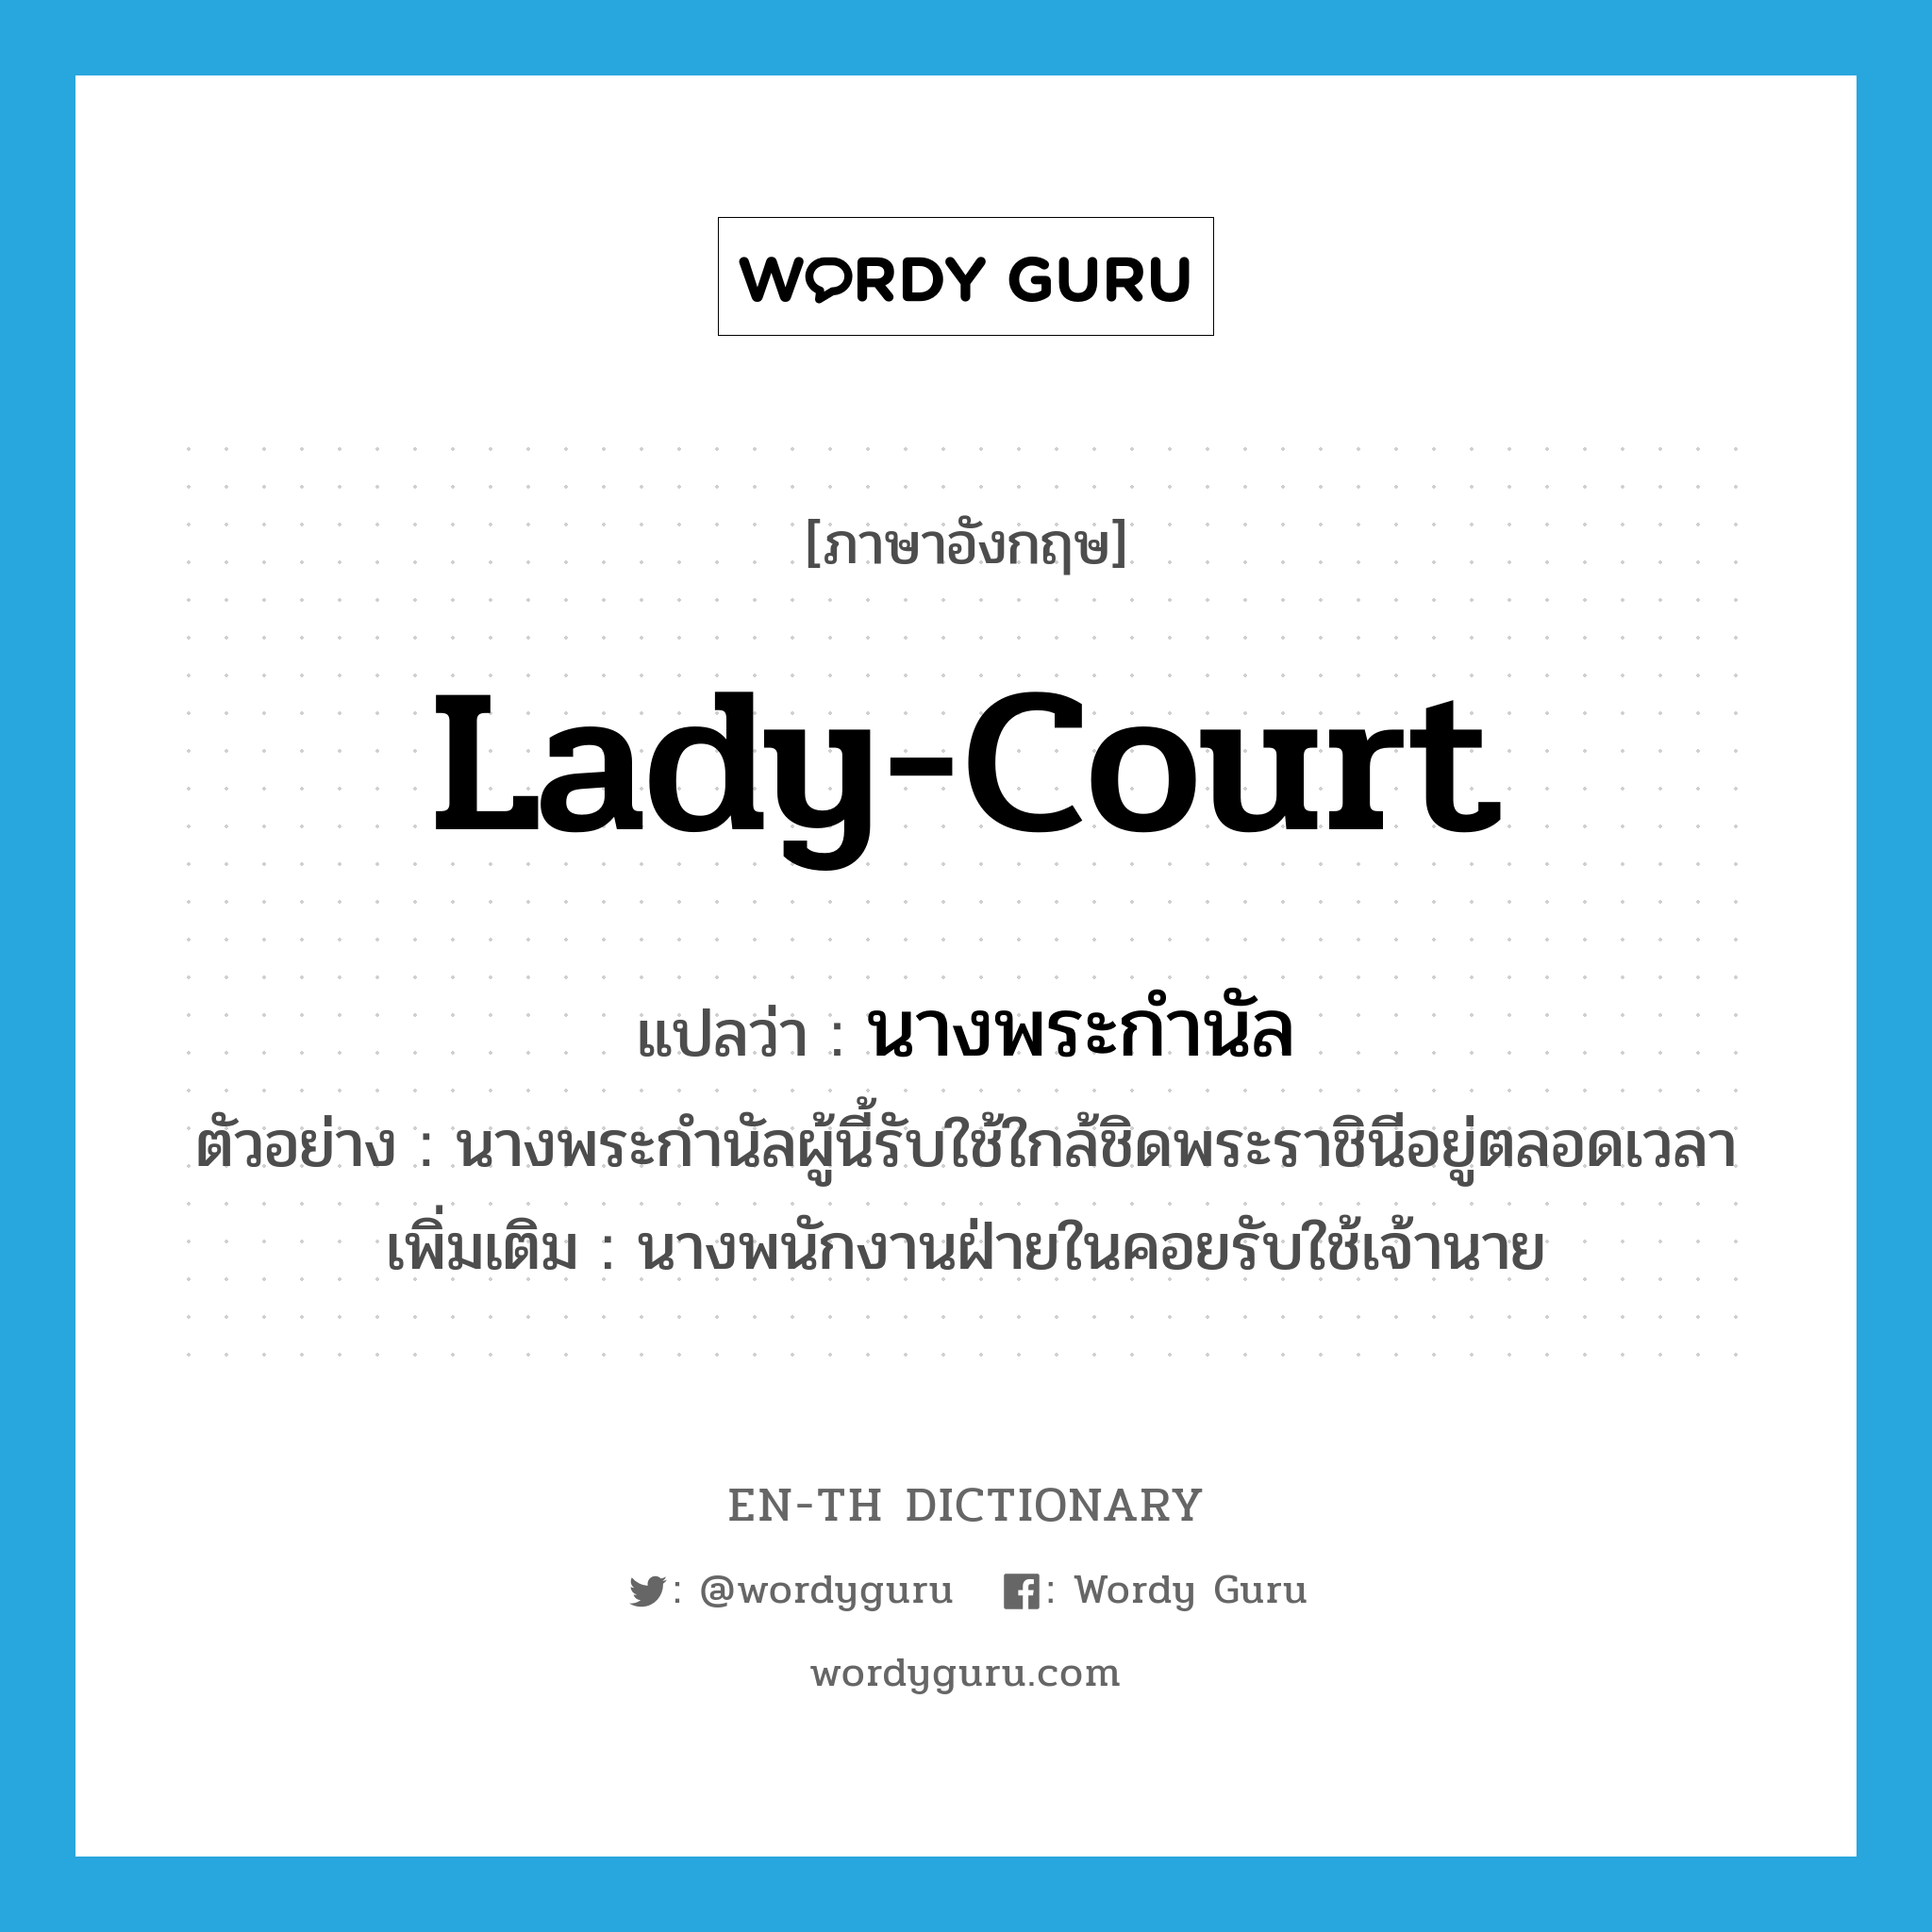 lady-court แปลว่า?, คำศัพท์ภาษาอังกฤษ lady-court แปลว่า นางพระกำนัล ประเภท N ตัวอย่าง นางพระกำนัลผู้นี้รับใช้ใกล้ชิดพระราชินีอยู่ตลอดเวลา เพิ่มเติม นางพนักงานฝ่ายในคอยรับใช้เจ้านาย หมวด N